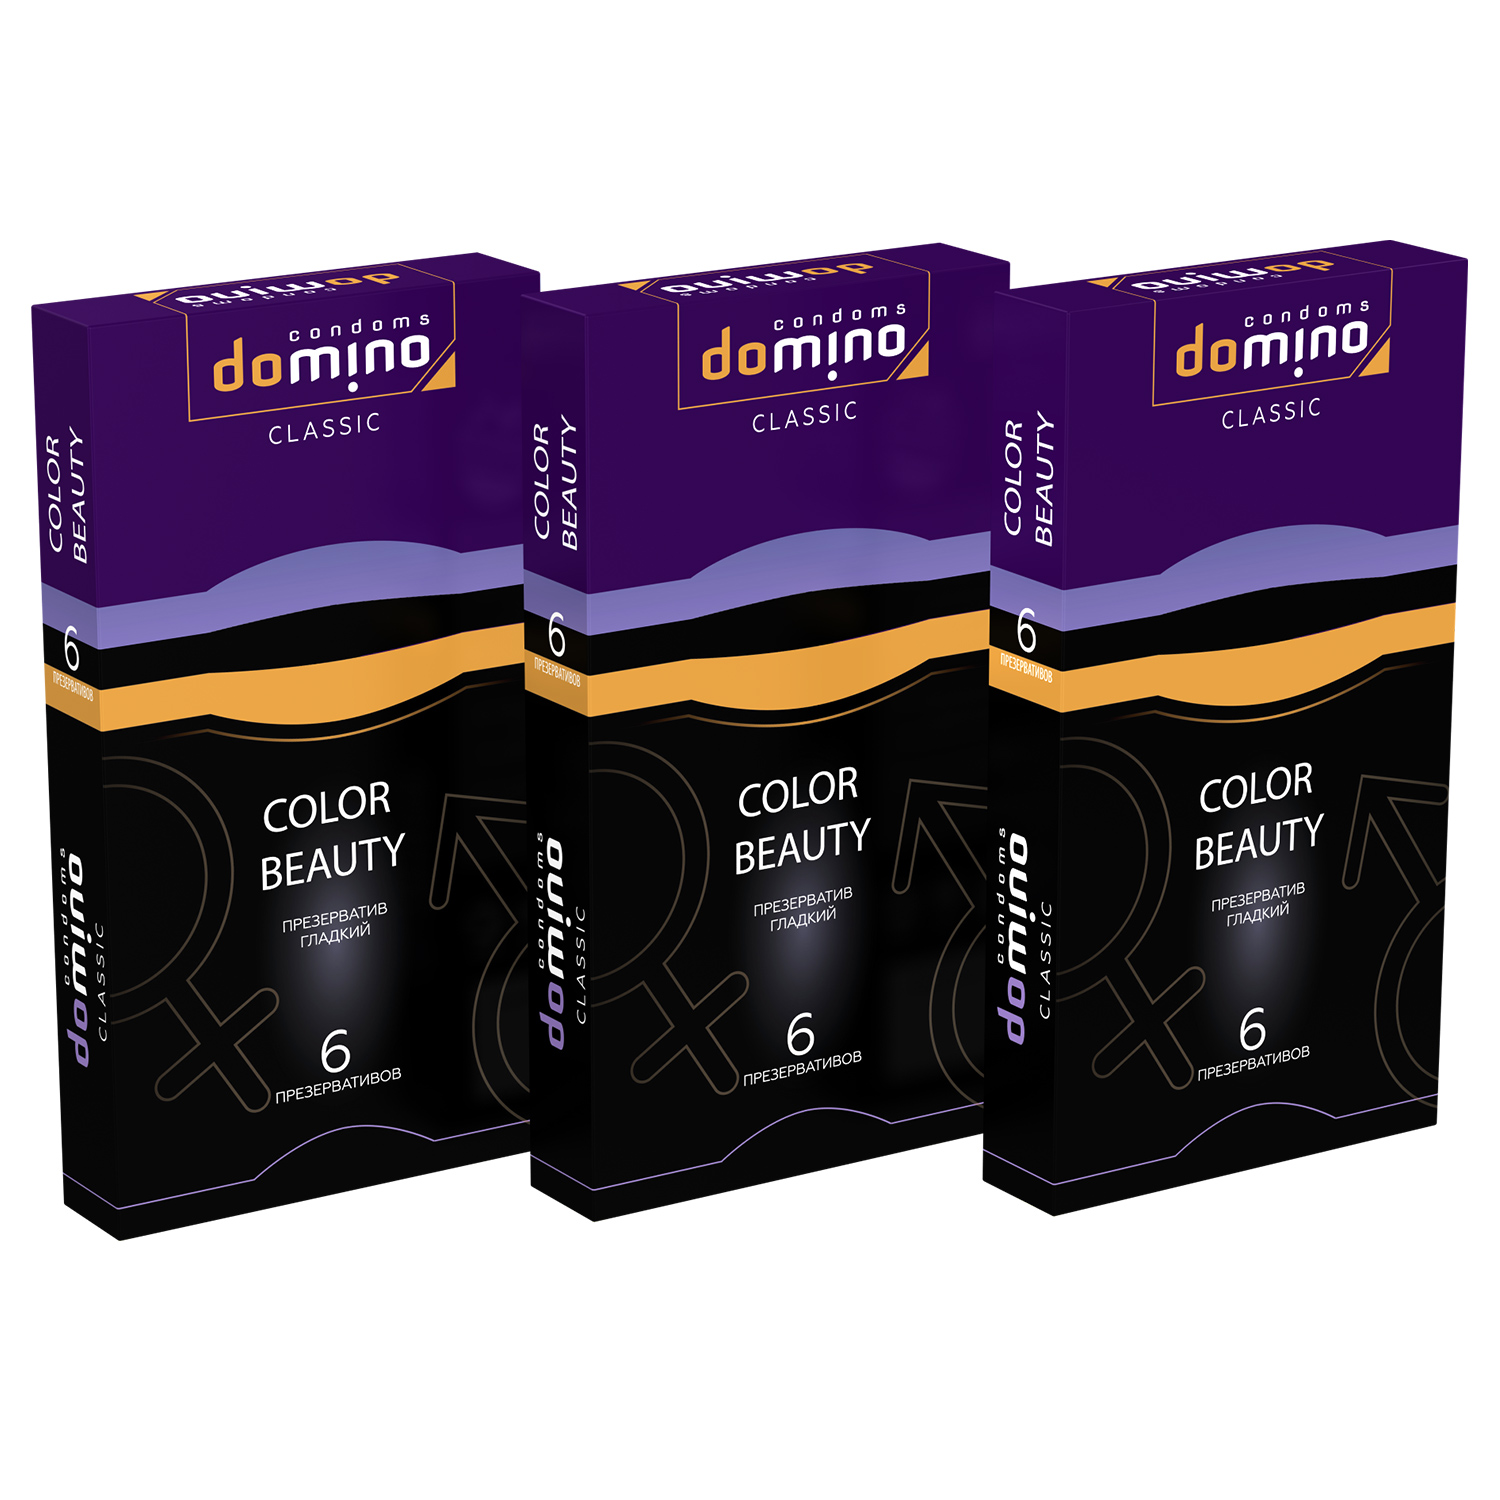 Купить Презервативы Domino Classic Colour Beauty 6 шт комплект из 3 пачек, Luxe